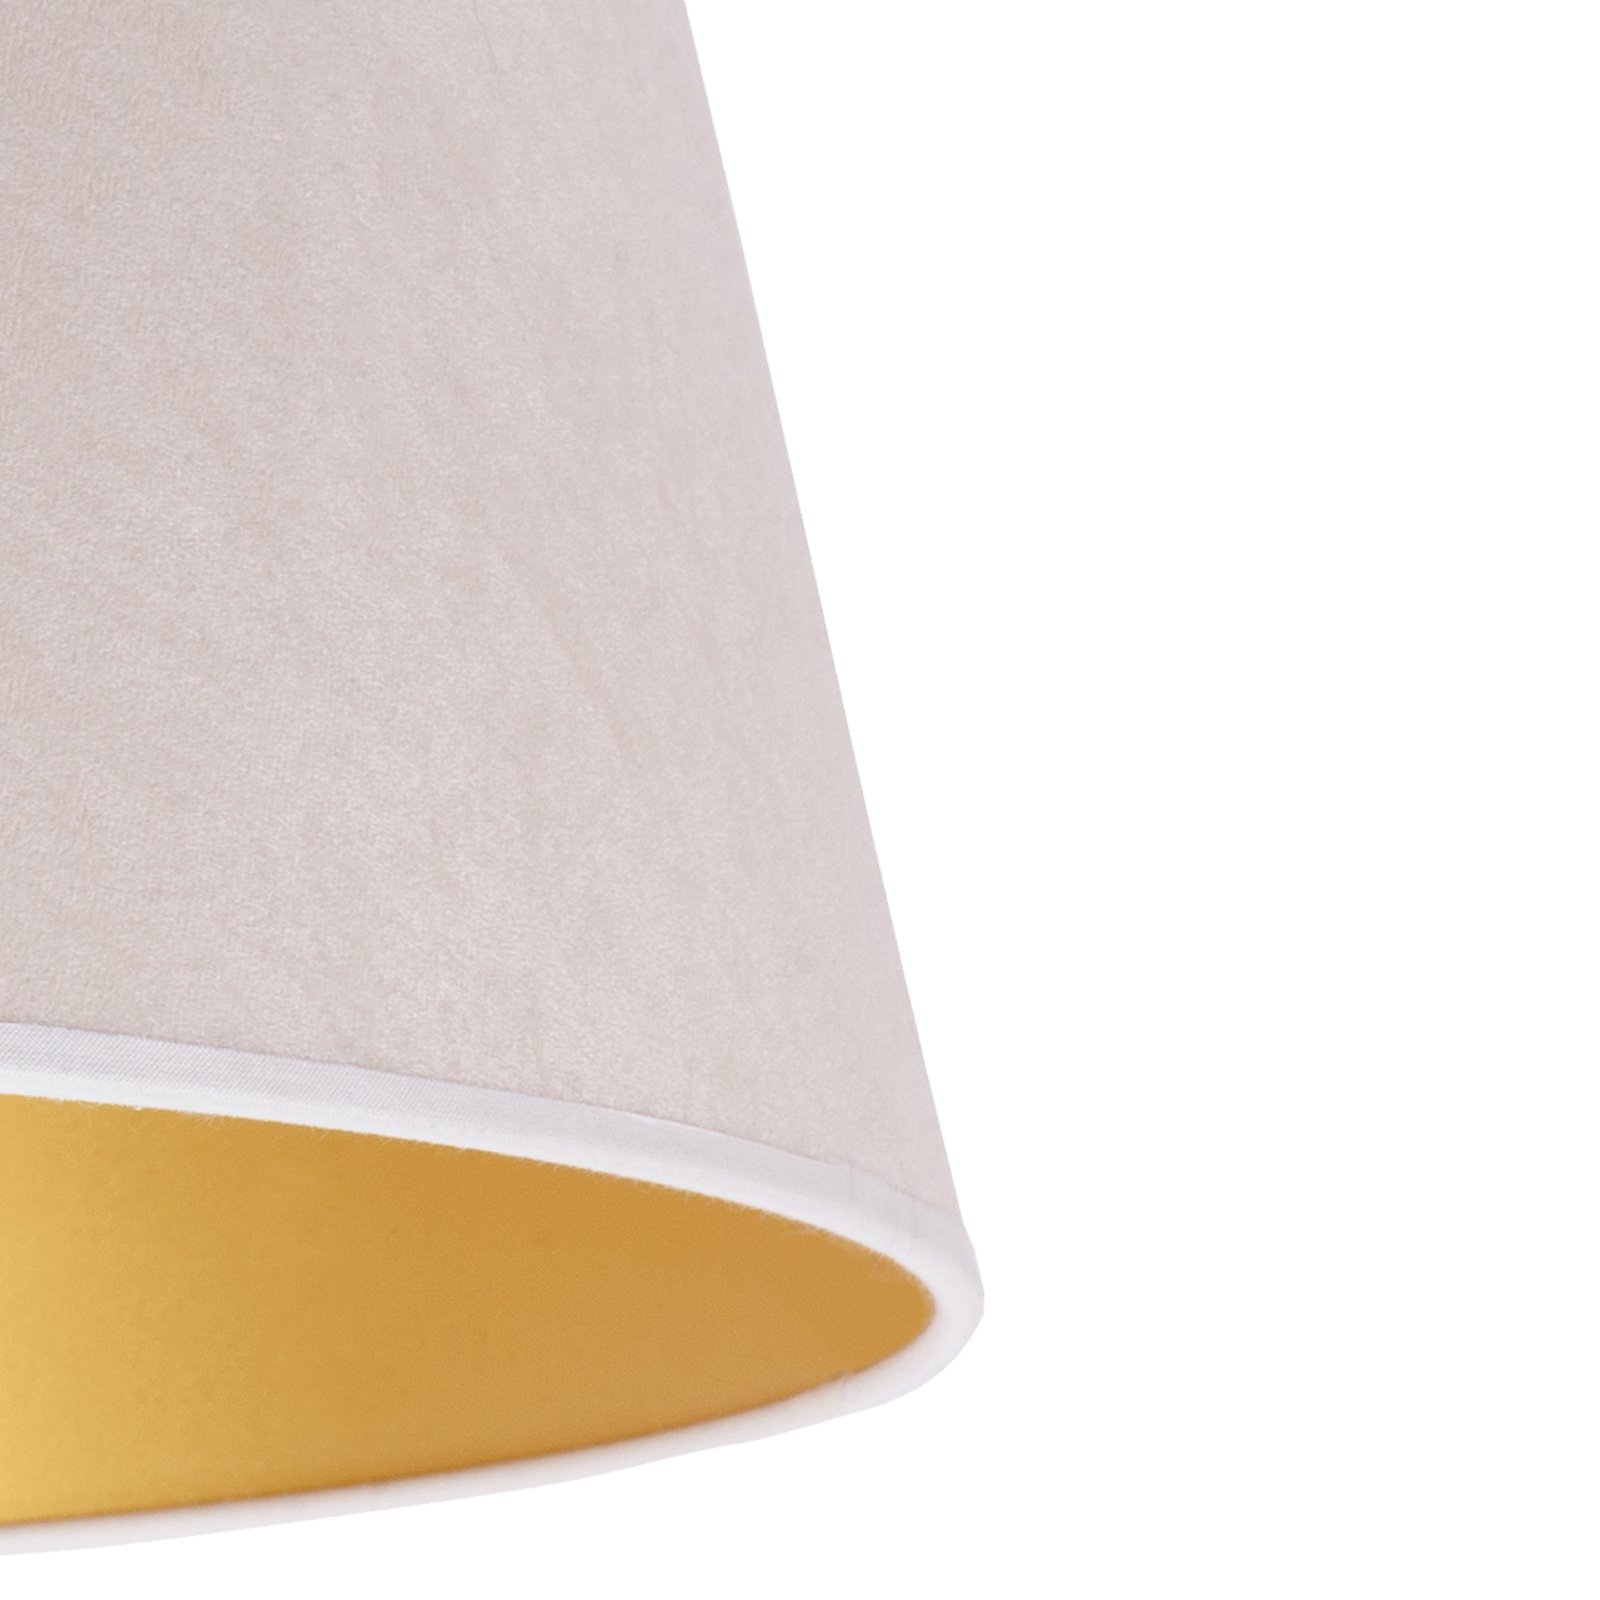 Cone lámpaernyő 25,5 cm magas, ekrü/arany